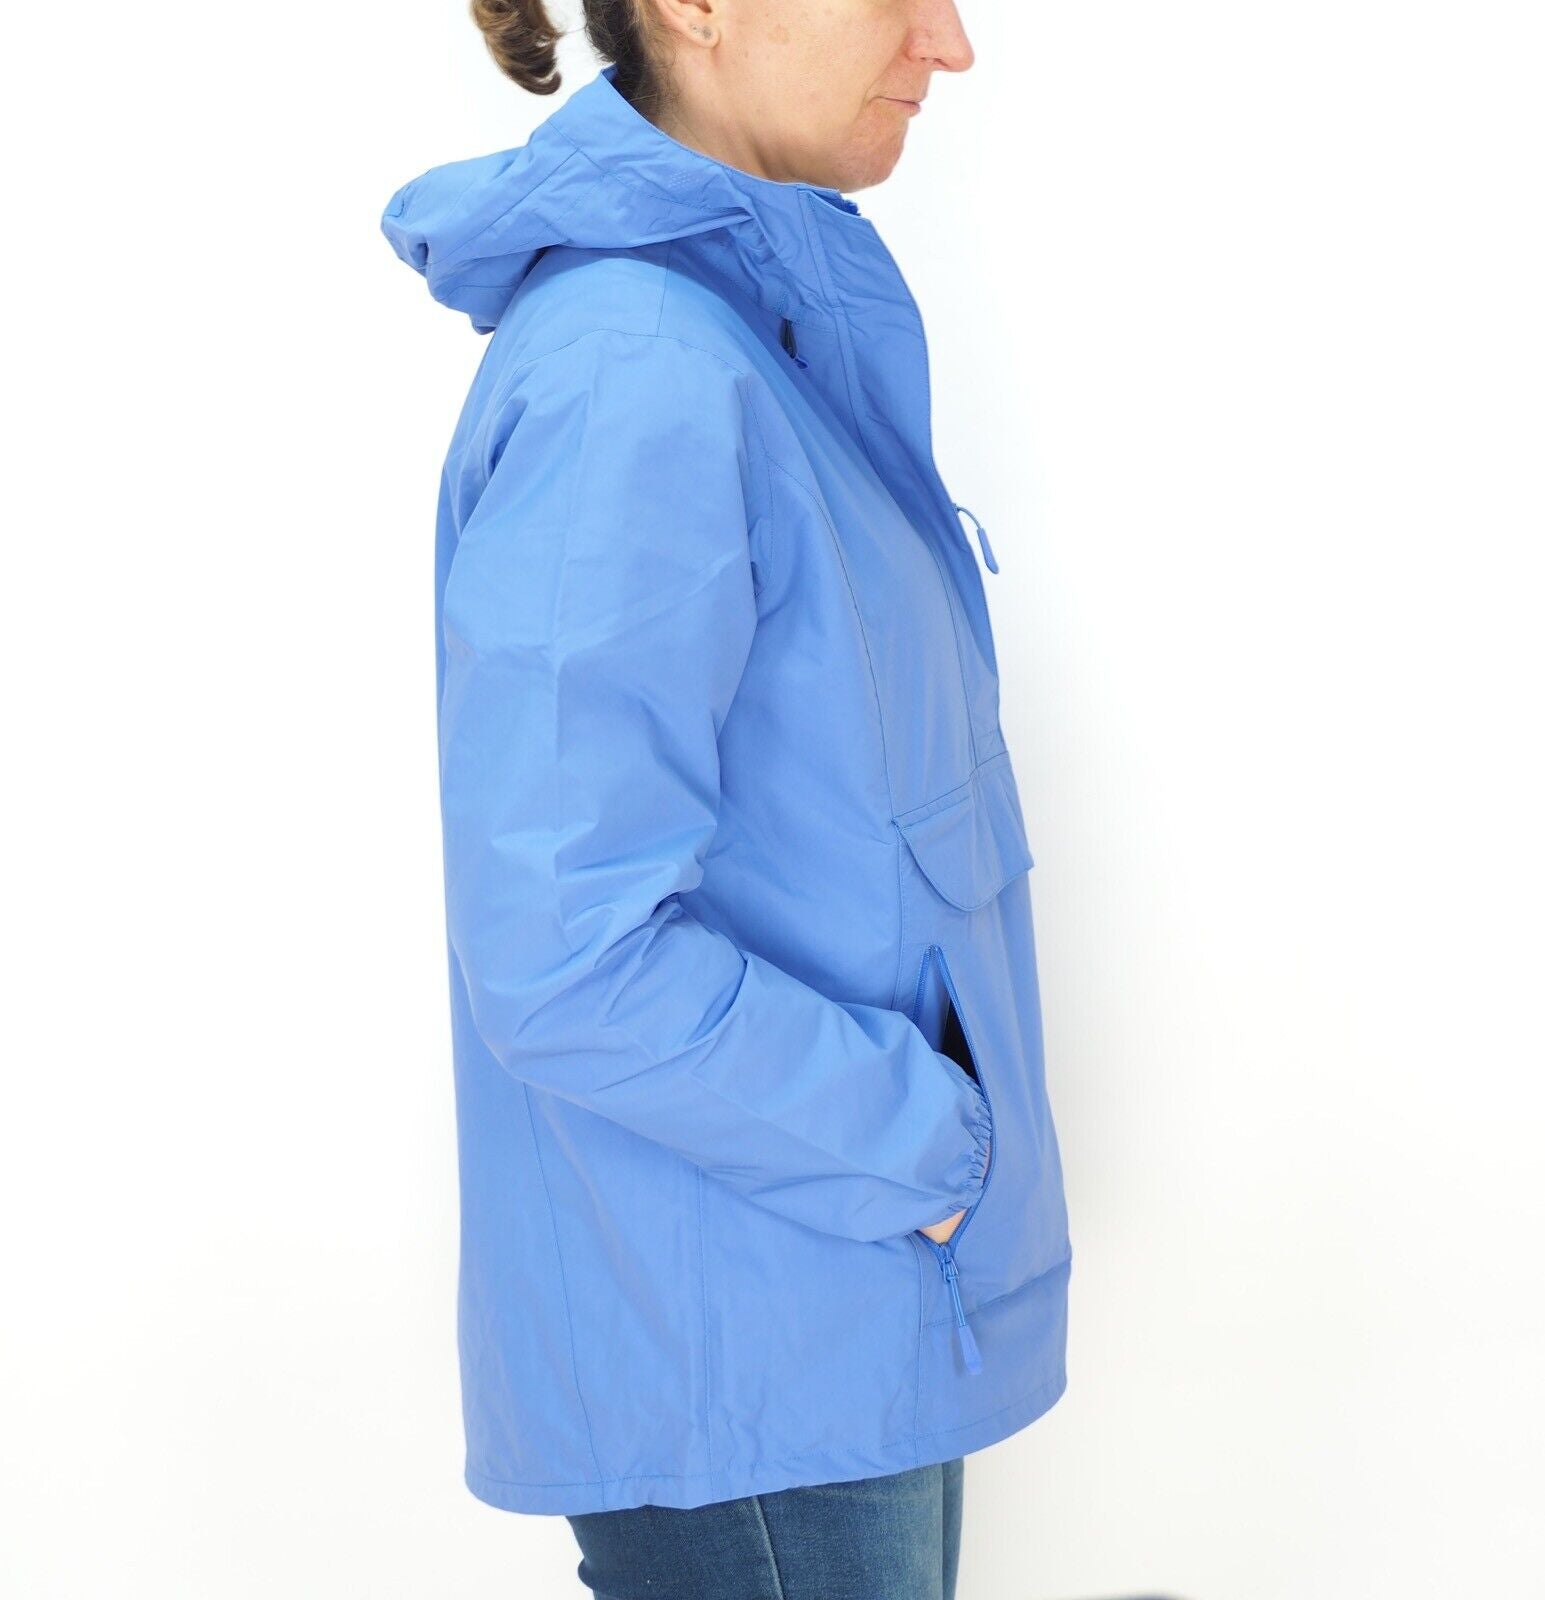 Womens Jack Wolfskin Cloudburst Smock 1108642 Baja Blue Waterproof Hooded Jacket - London Top Style